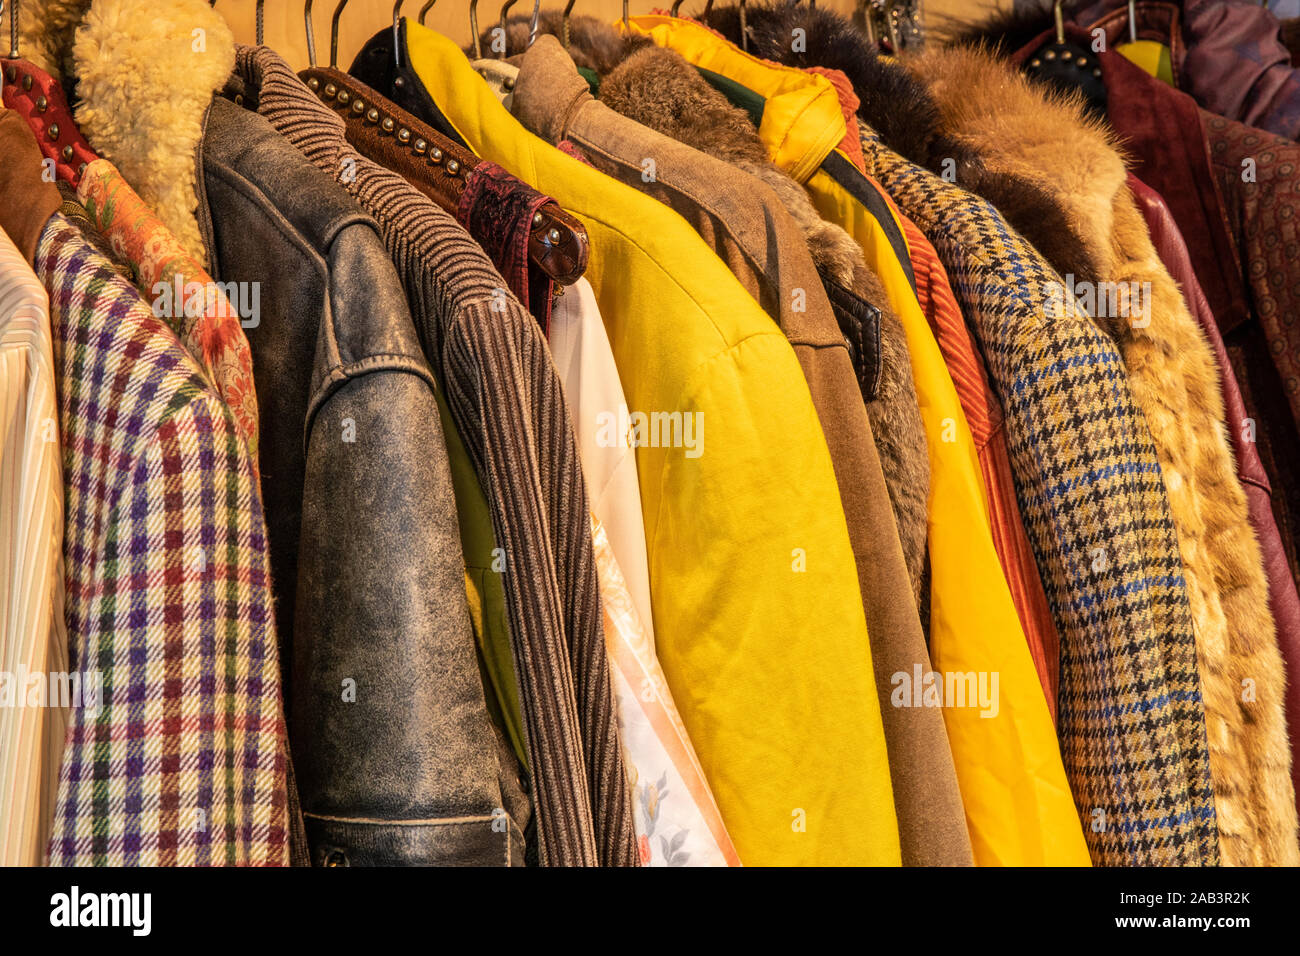 Weda de couleurs jaune et marron vêtements vintage teinté, vestes avec différents motifs, couleurs et textures accroché sur un rack. Recylcing clothi Banque D'Images